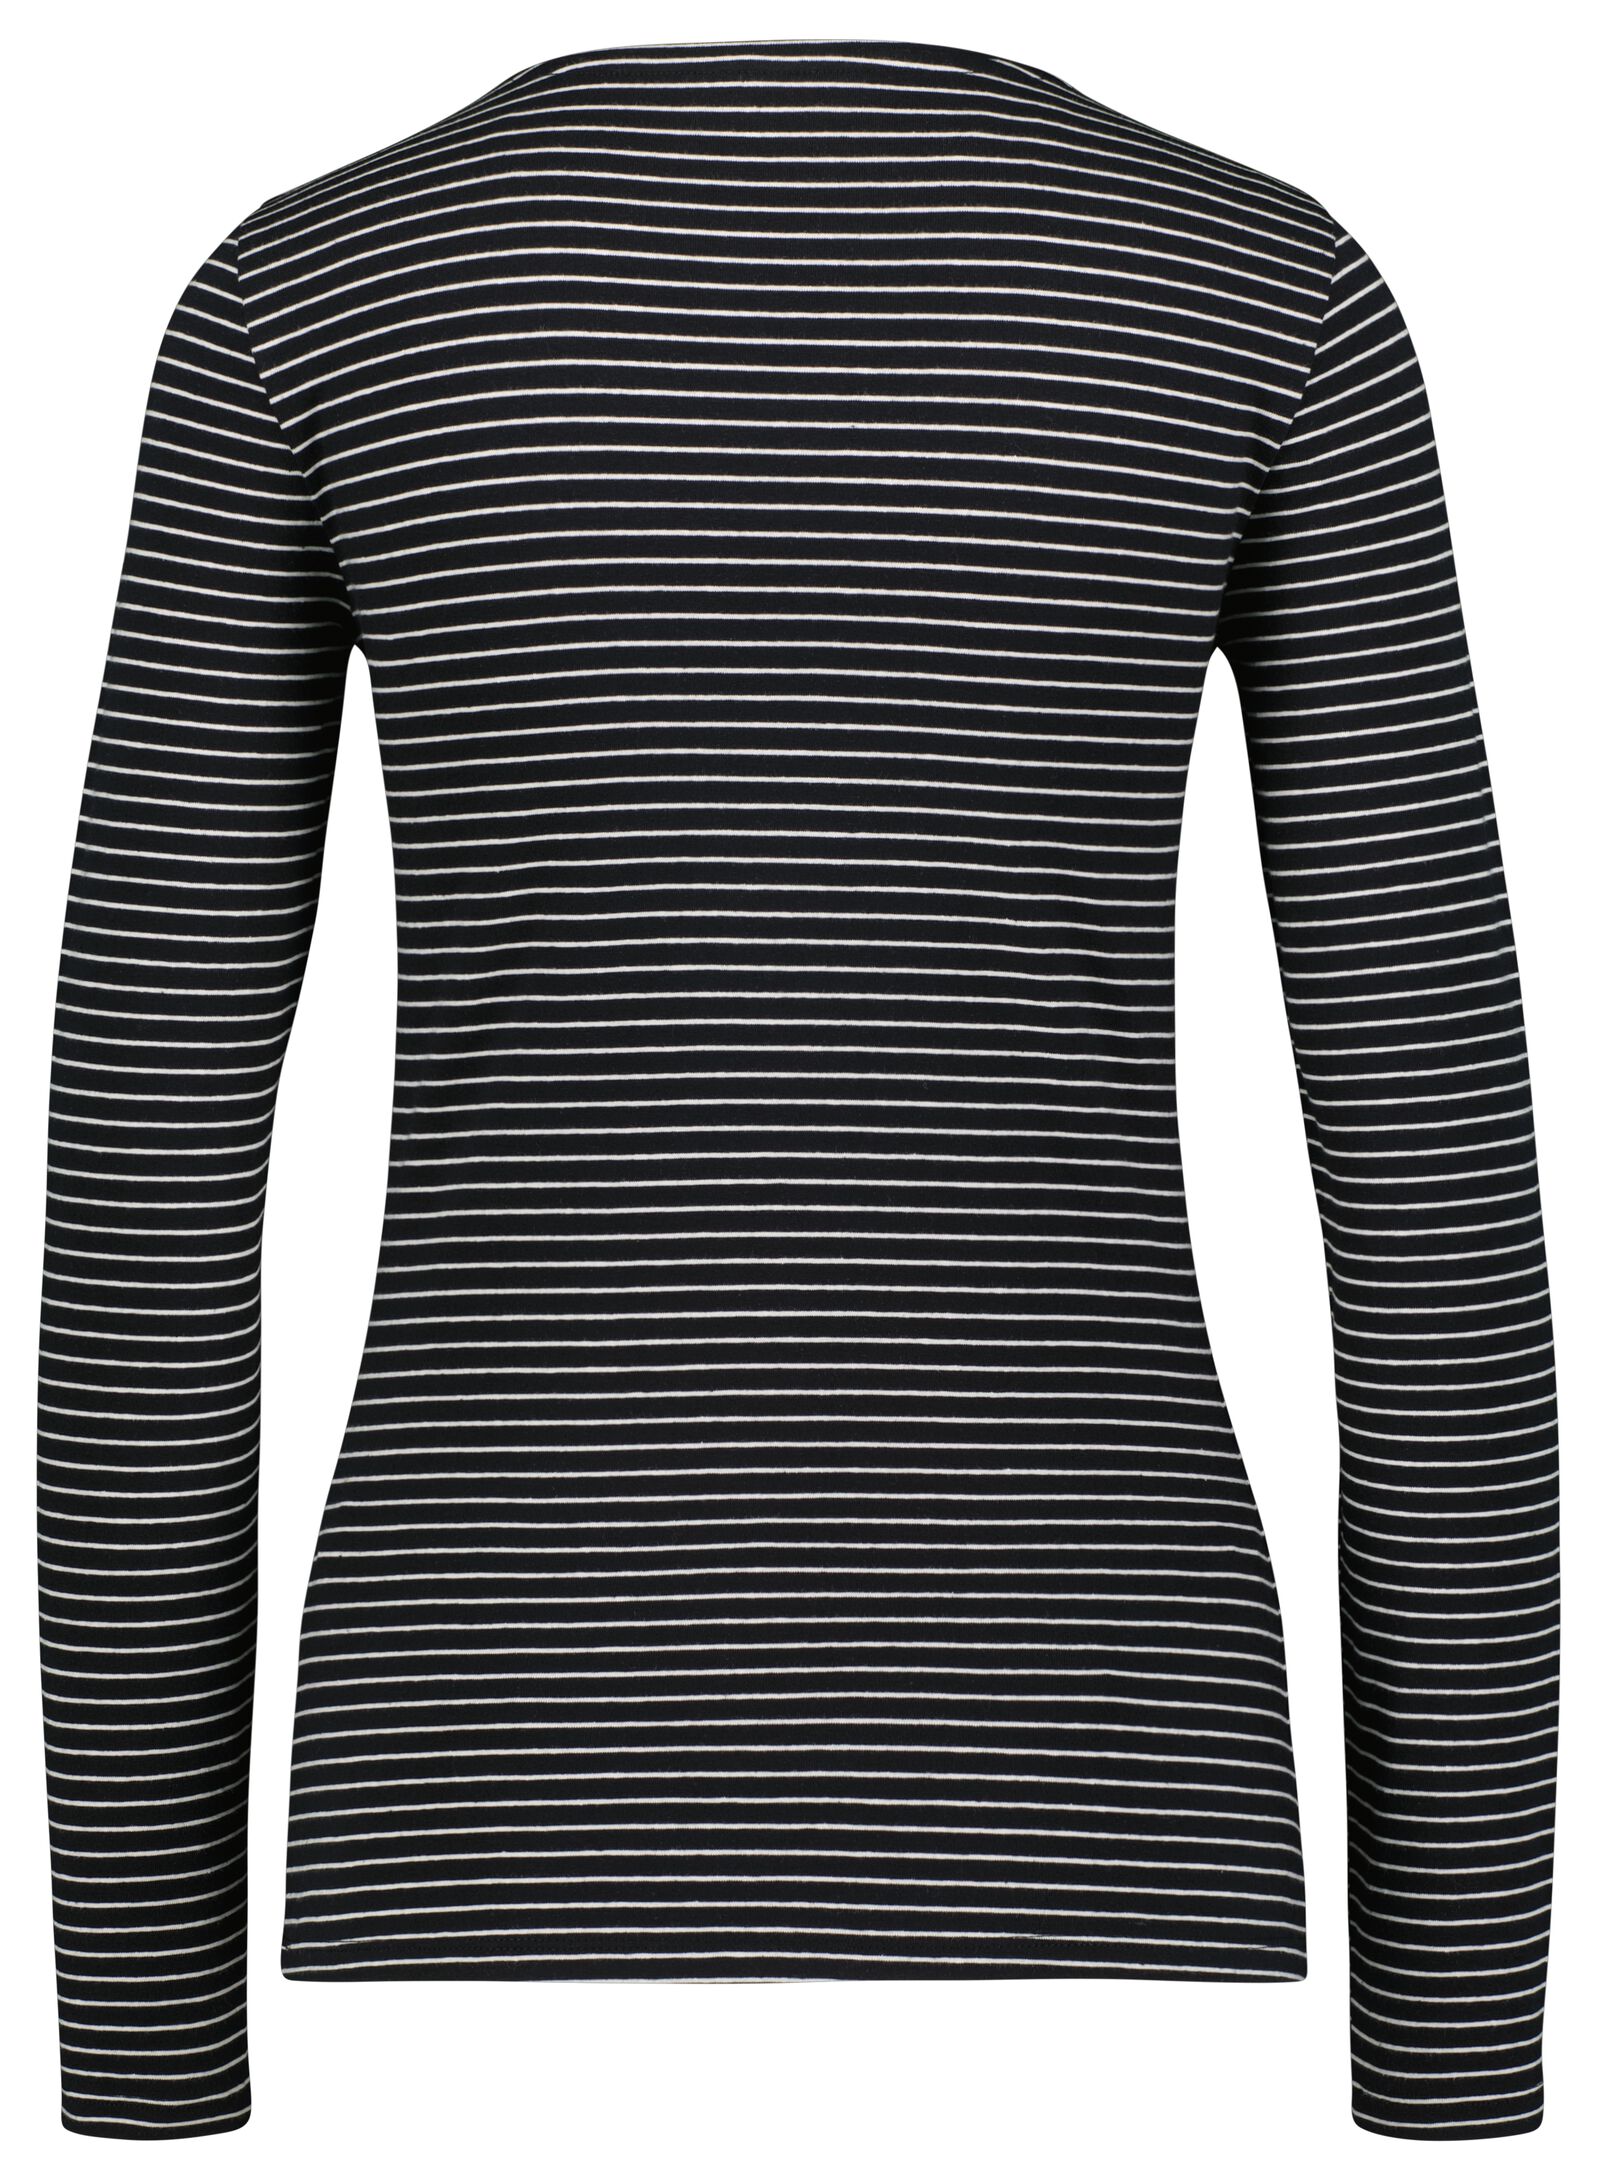 dames t-shirt strepen zwart/wit zwart/wit - 1000025539 - HEMA